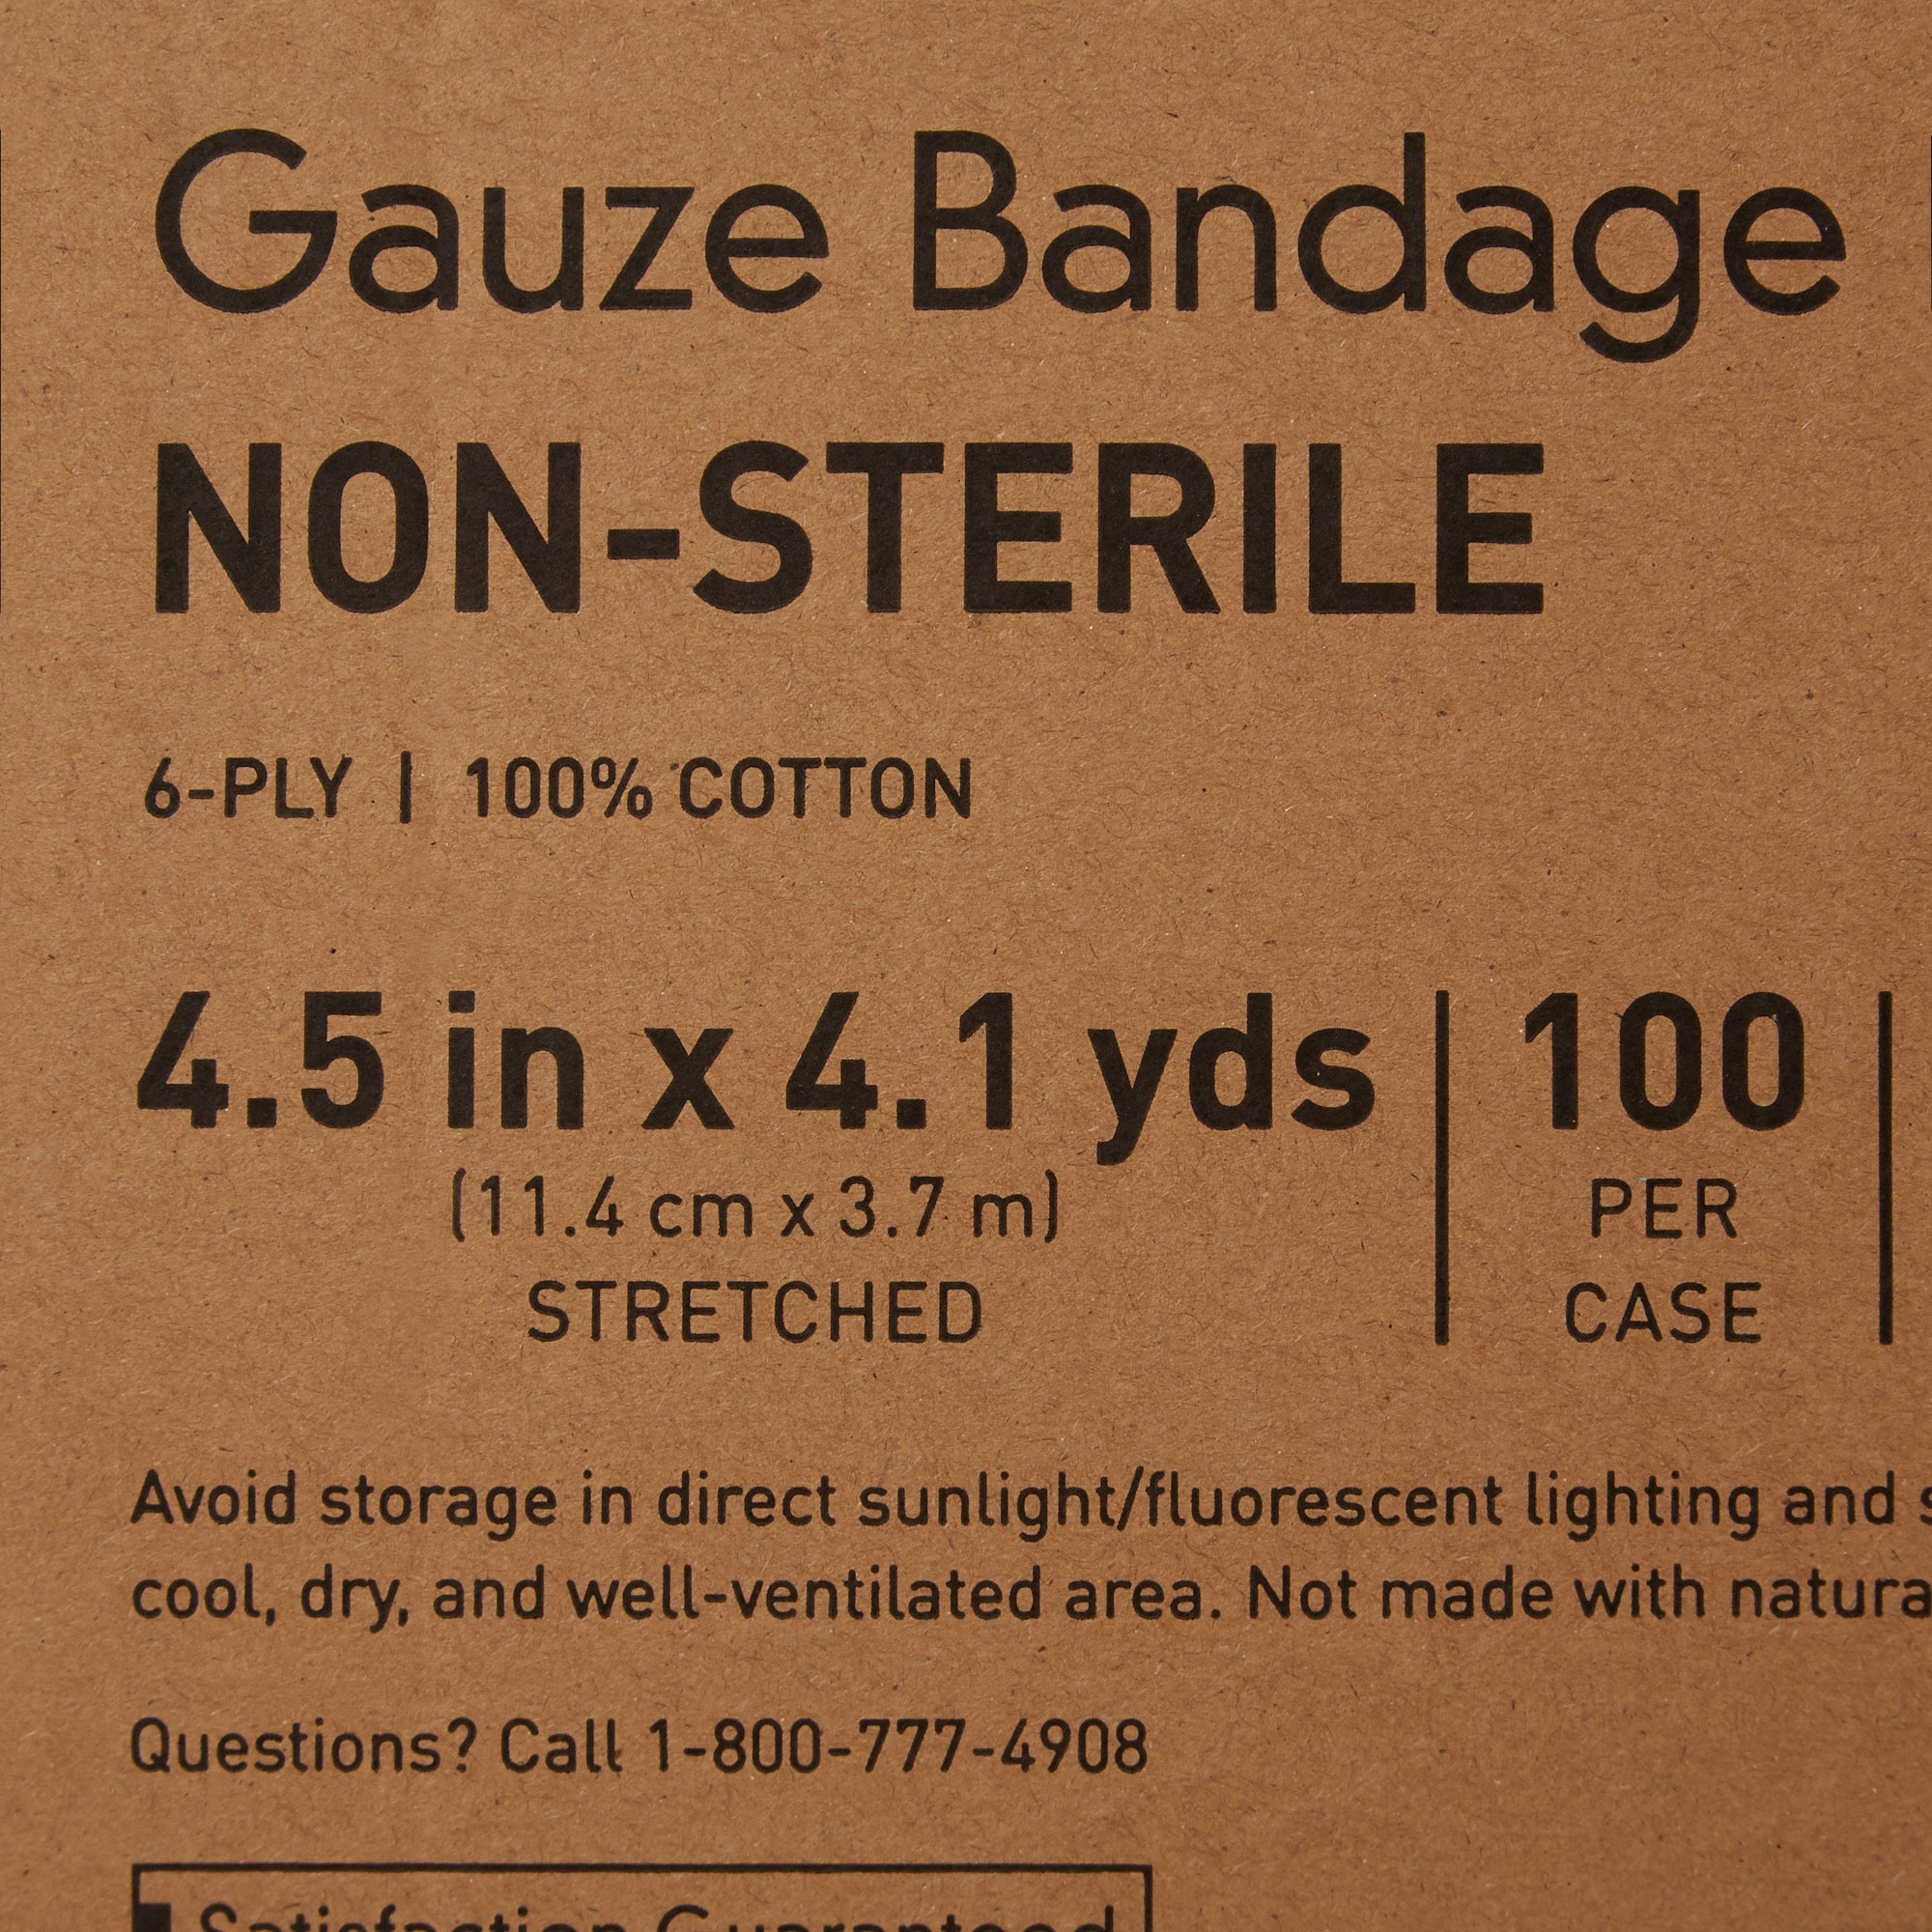 Fluff Bandage Roll McKesson 4-1/2 Inch X 4-1/10 Yard 100 per Case NonSterile 6-Ply Roll Shape